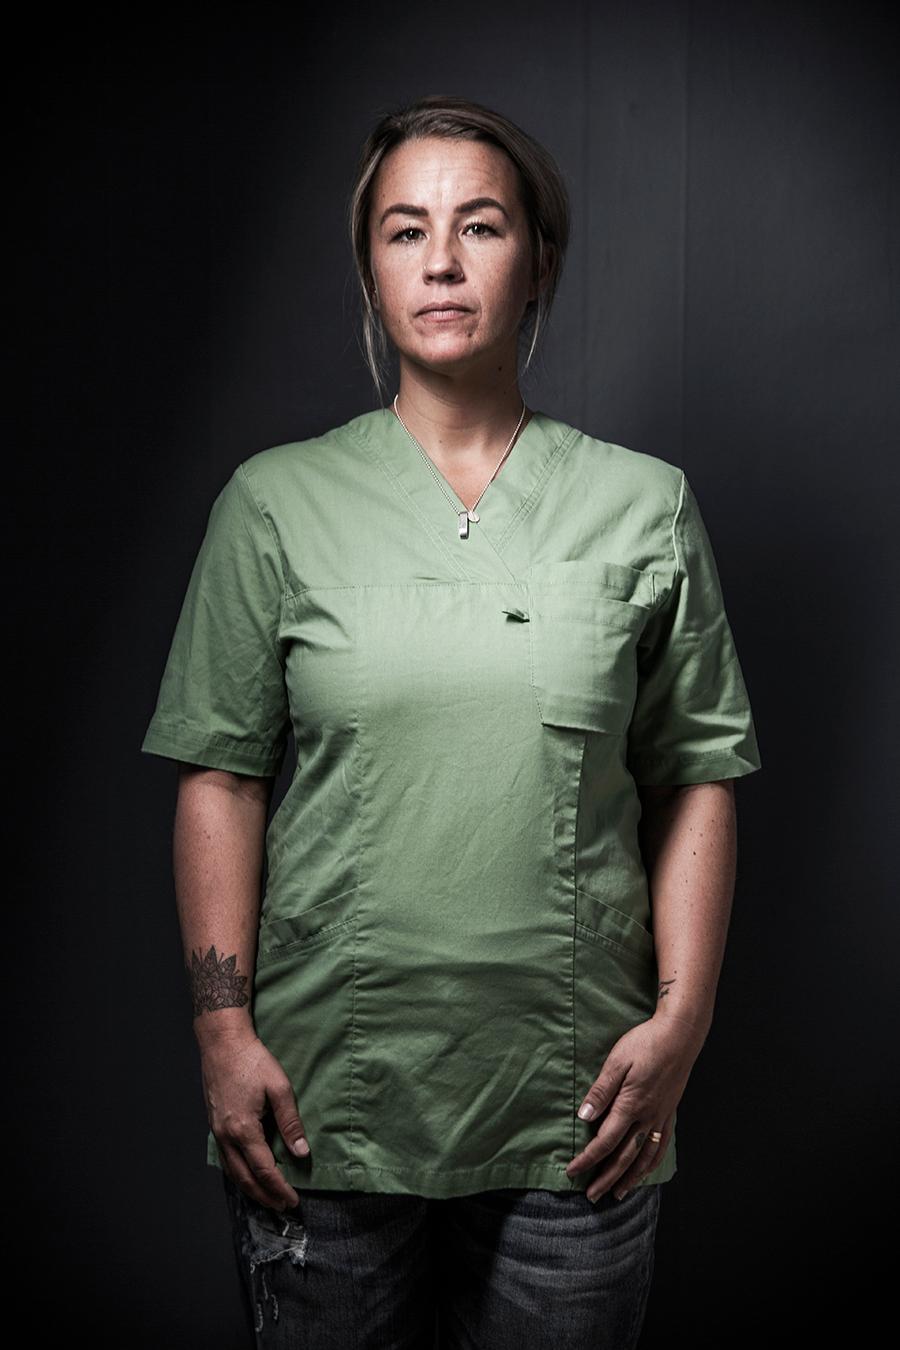 Undersköterskan Malin Wegge från Göteborg är en av dem som porträtteras i Annica Carlsson Bergdahl och Elisabeth Ohlsons ”Vi som arbetar med våra kroppar”.